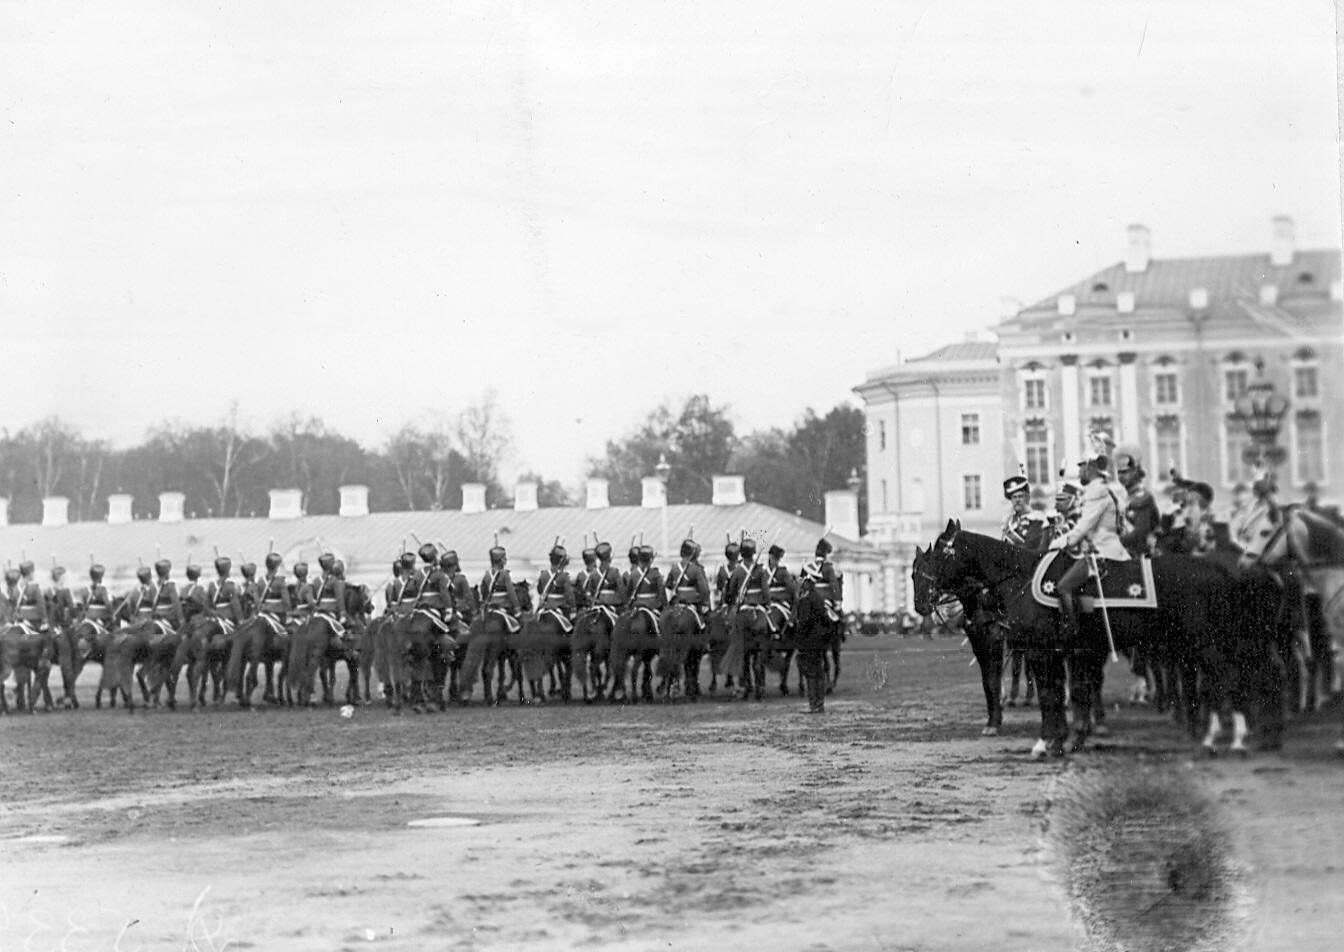 1912. Лейб-гвардии Гусарский его величества полк проходит маршем мимо императора Николая II и германского принца Фридриха-Вильгельма. 7 мая